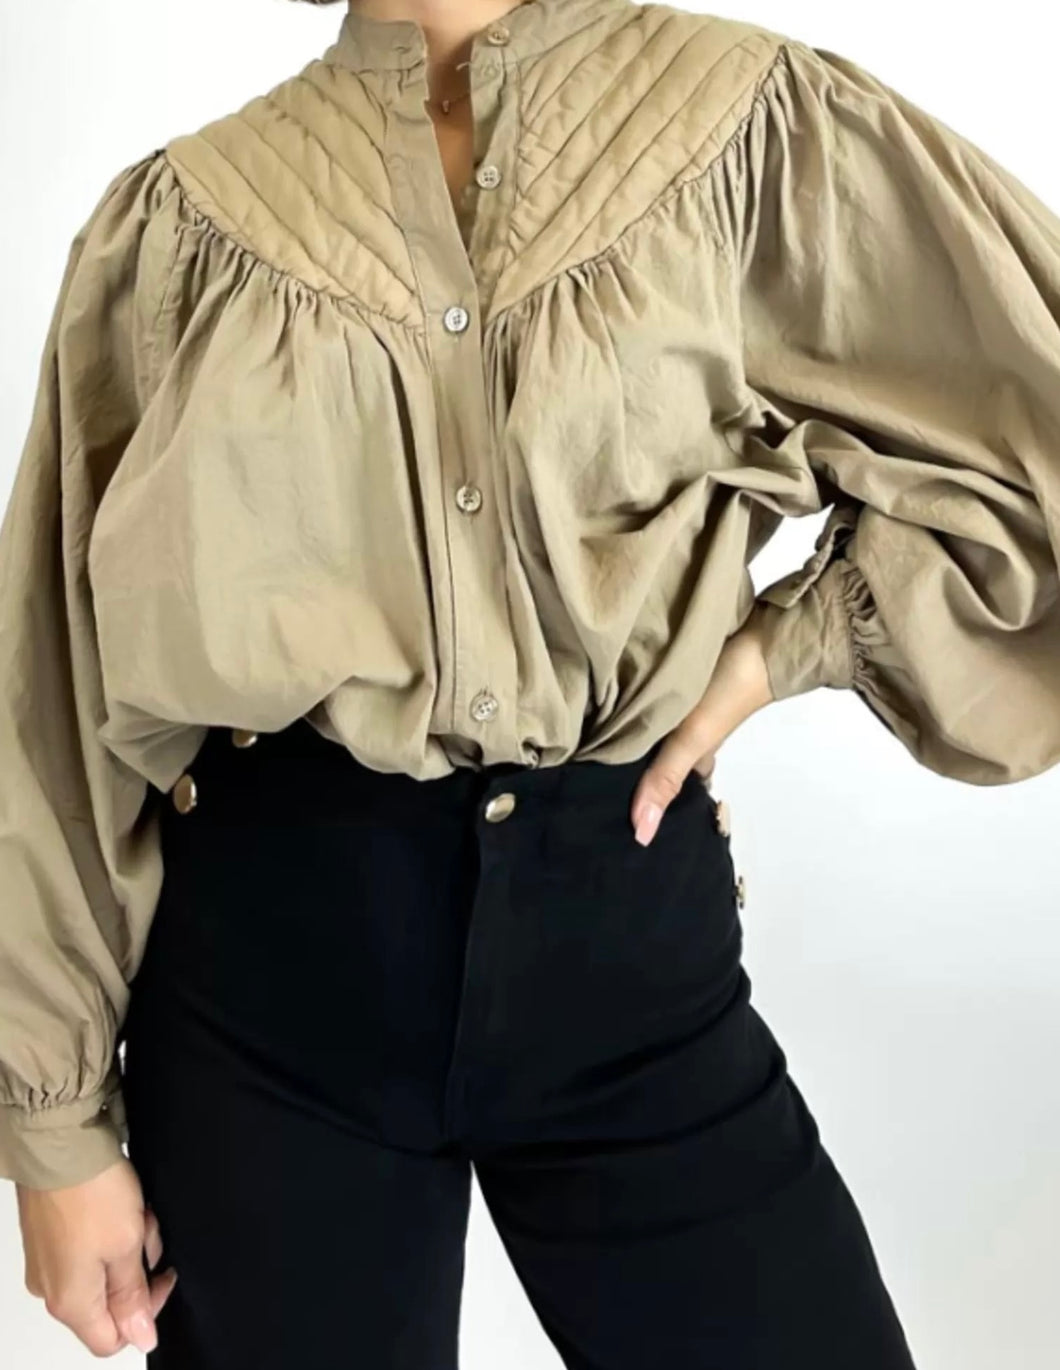 Deze oversized blouse is een heerlijk luchtige wijde blouse met lange mouwen, heeft op het voorpand en het achterpand een dubbel gestikt stuk in een punt, als leuk detail.  Blouse is verkrijgbaar in verschillende kleuren: Brique, Army Green, Beige. Deze blousetops zijn mooi te combineren met een spijkerbroek/rok of een flared broek van Corel.